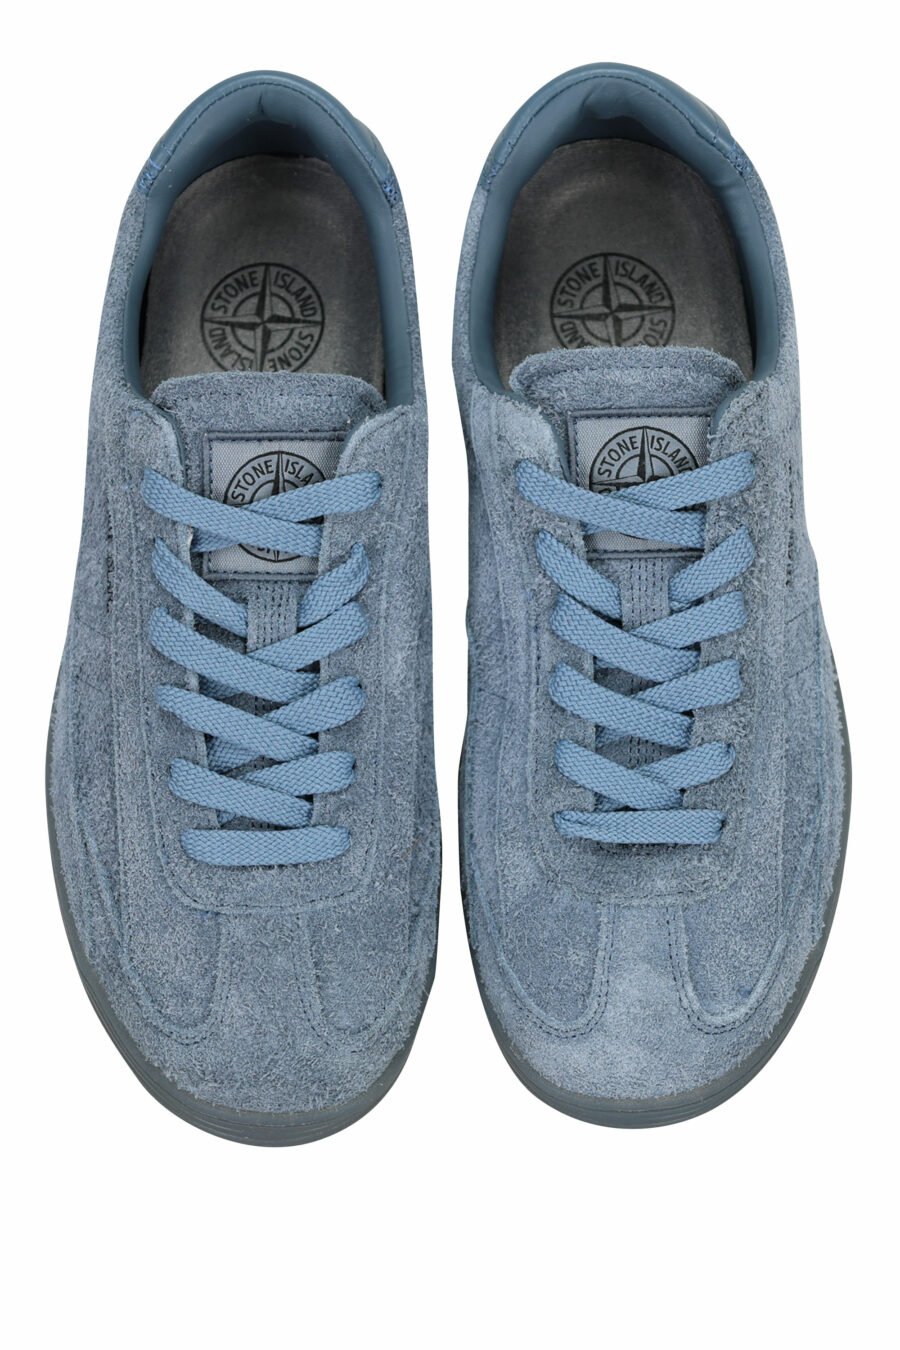 Zapatillas azul oscuro con minilogo y suela gris - 8052572937866 4